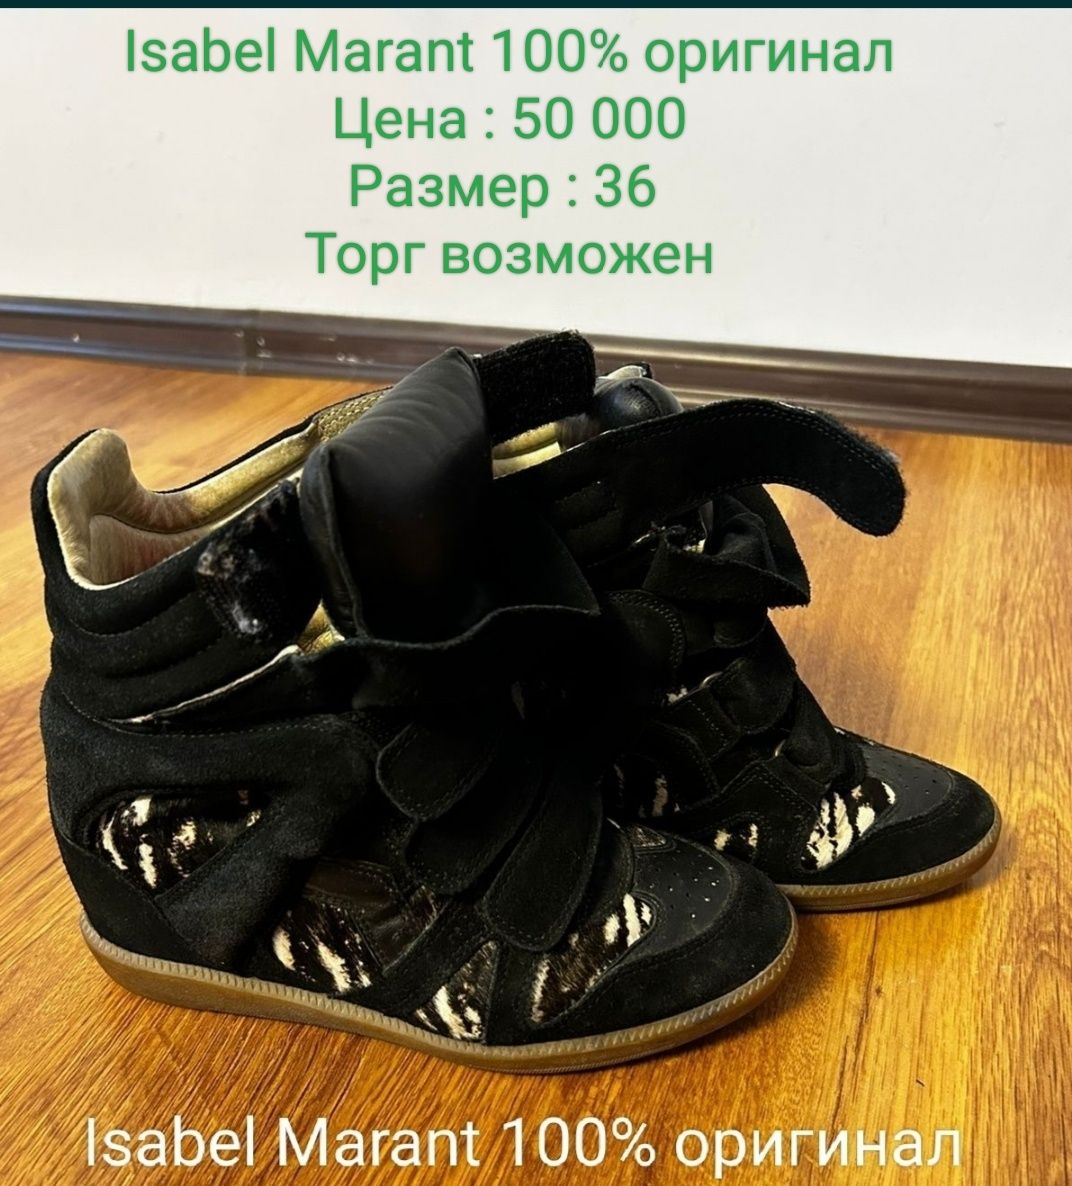 Обувь Isabel Marant 100% оригинал
Цена : 15000 
Размер : 36 
Торг